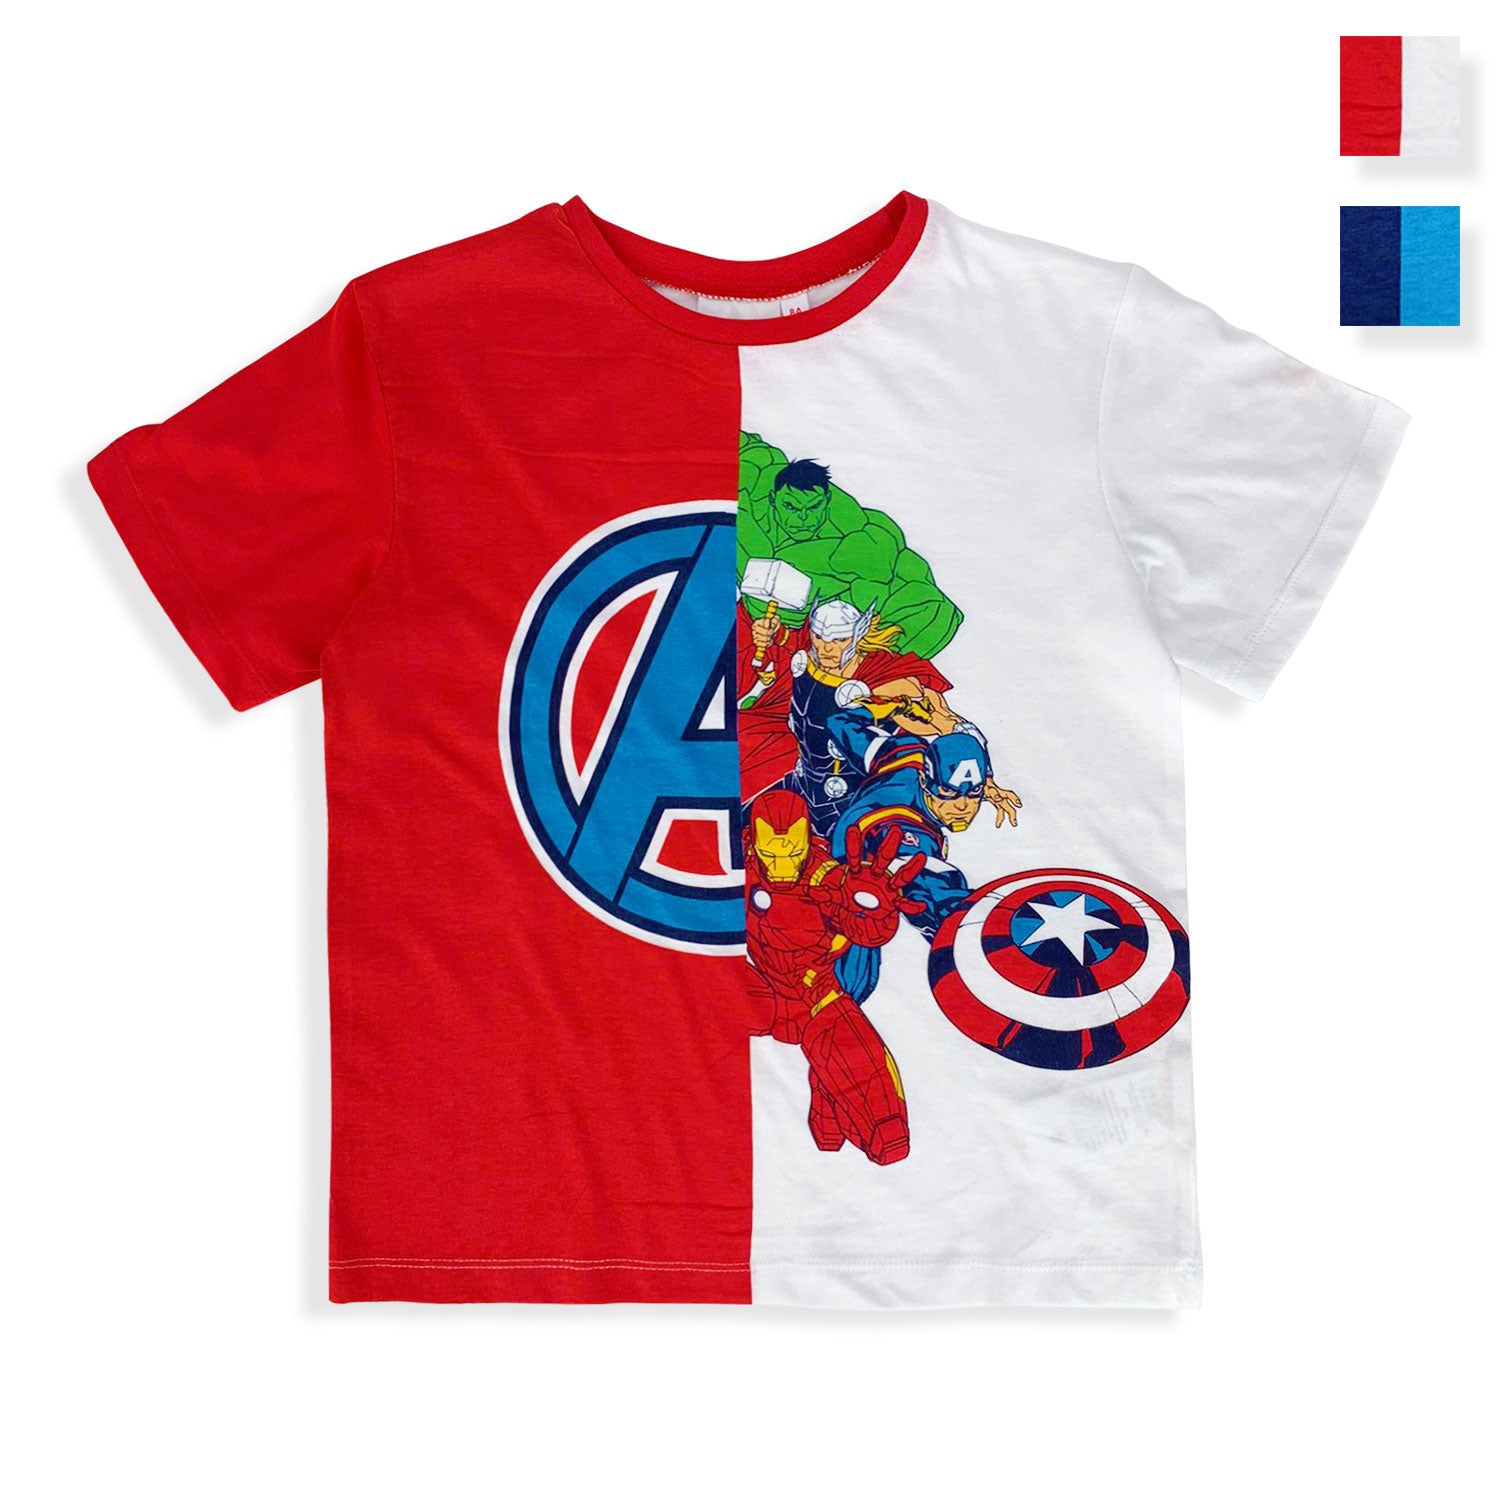 Maglietta Marvel Avengers t-shirt bambino mezze maniche in cotone estivo 5359